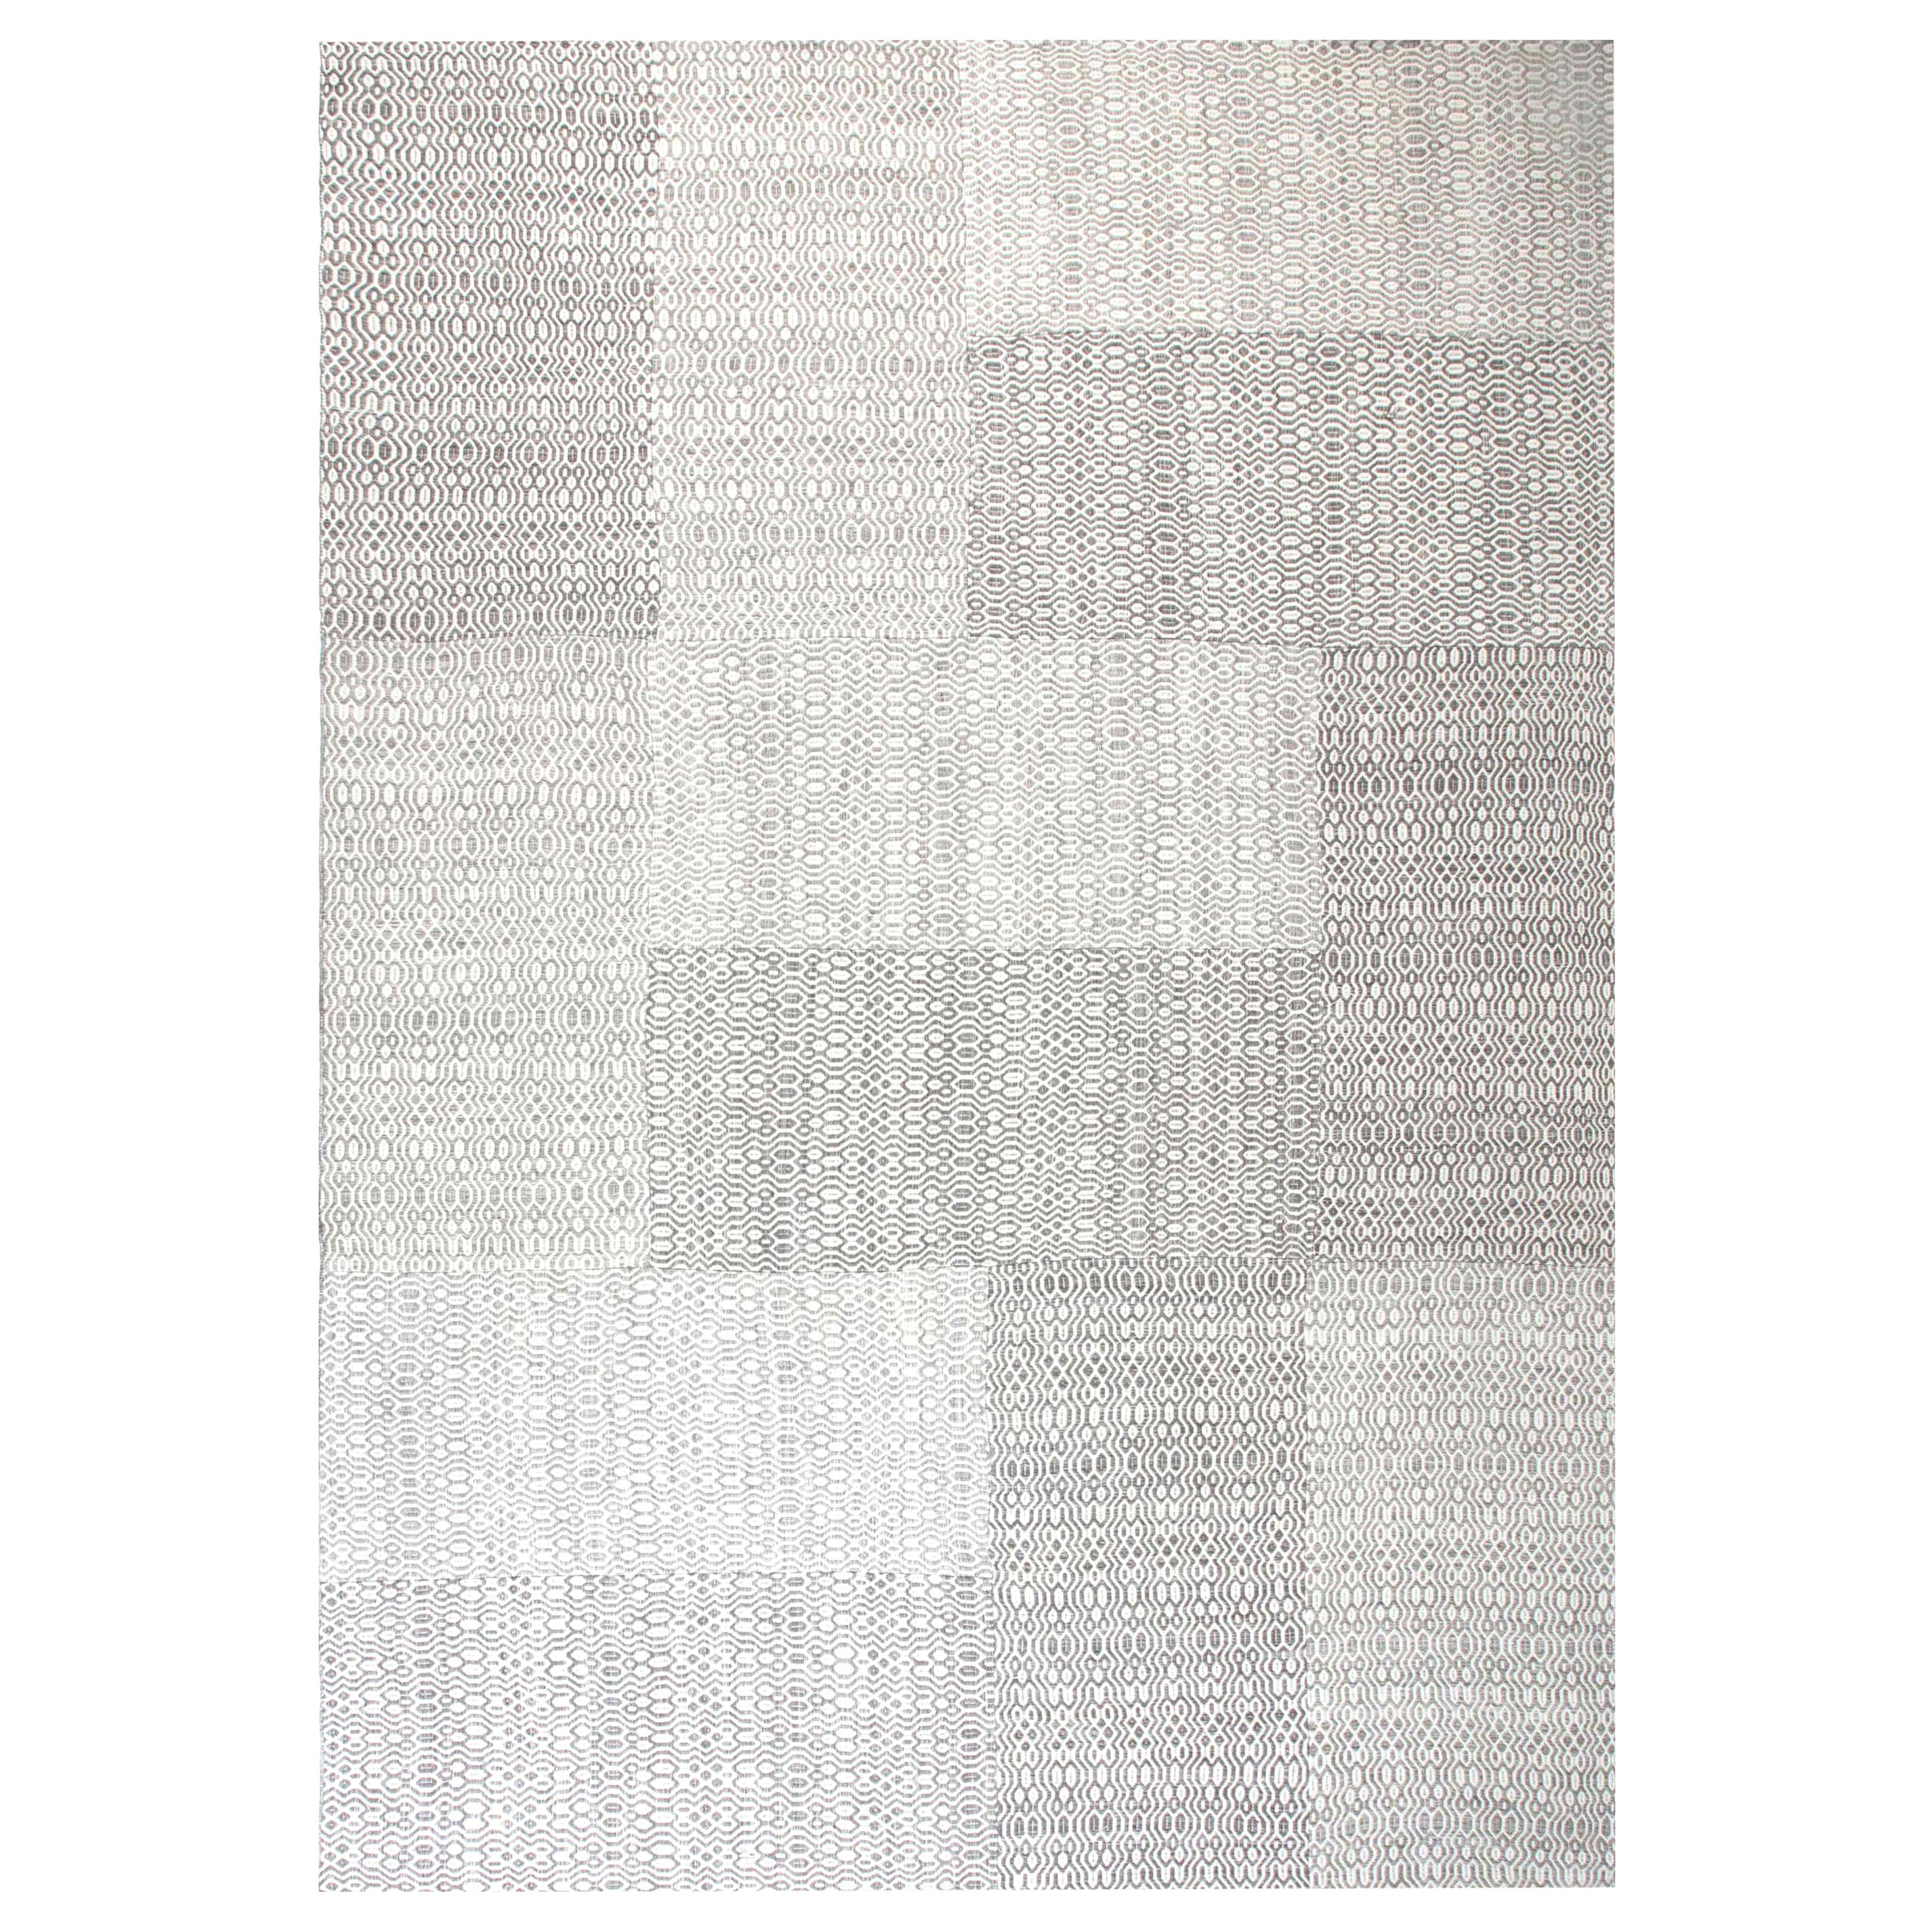 Tapis contemporain en laine tissée à plat, gris et blanc, par Doris Leslie Blau